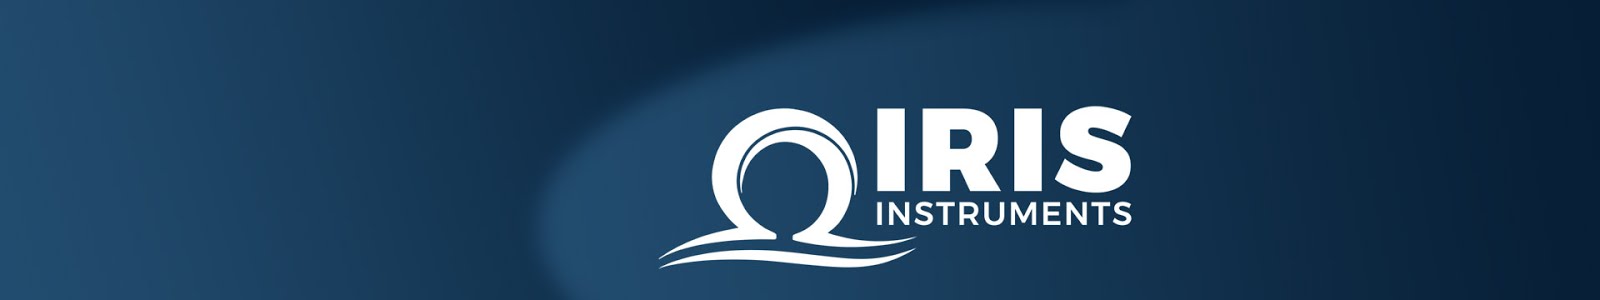 News IRIS Instruments